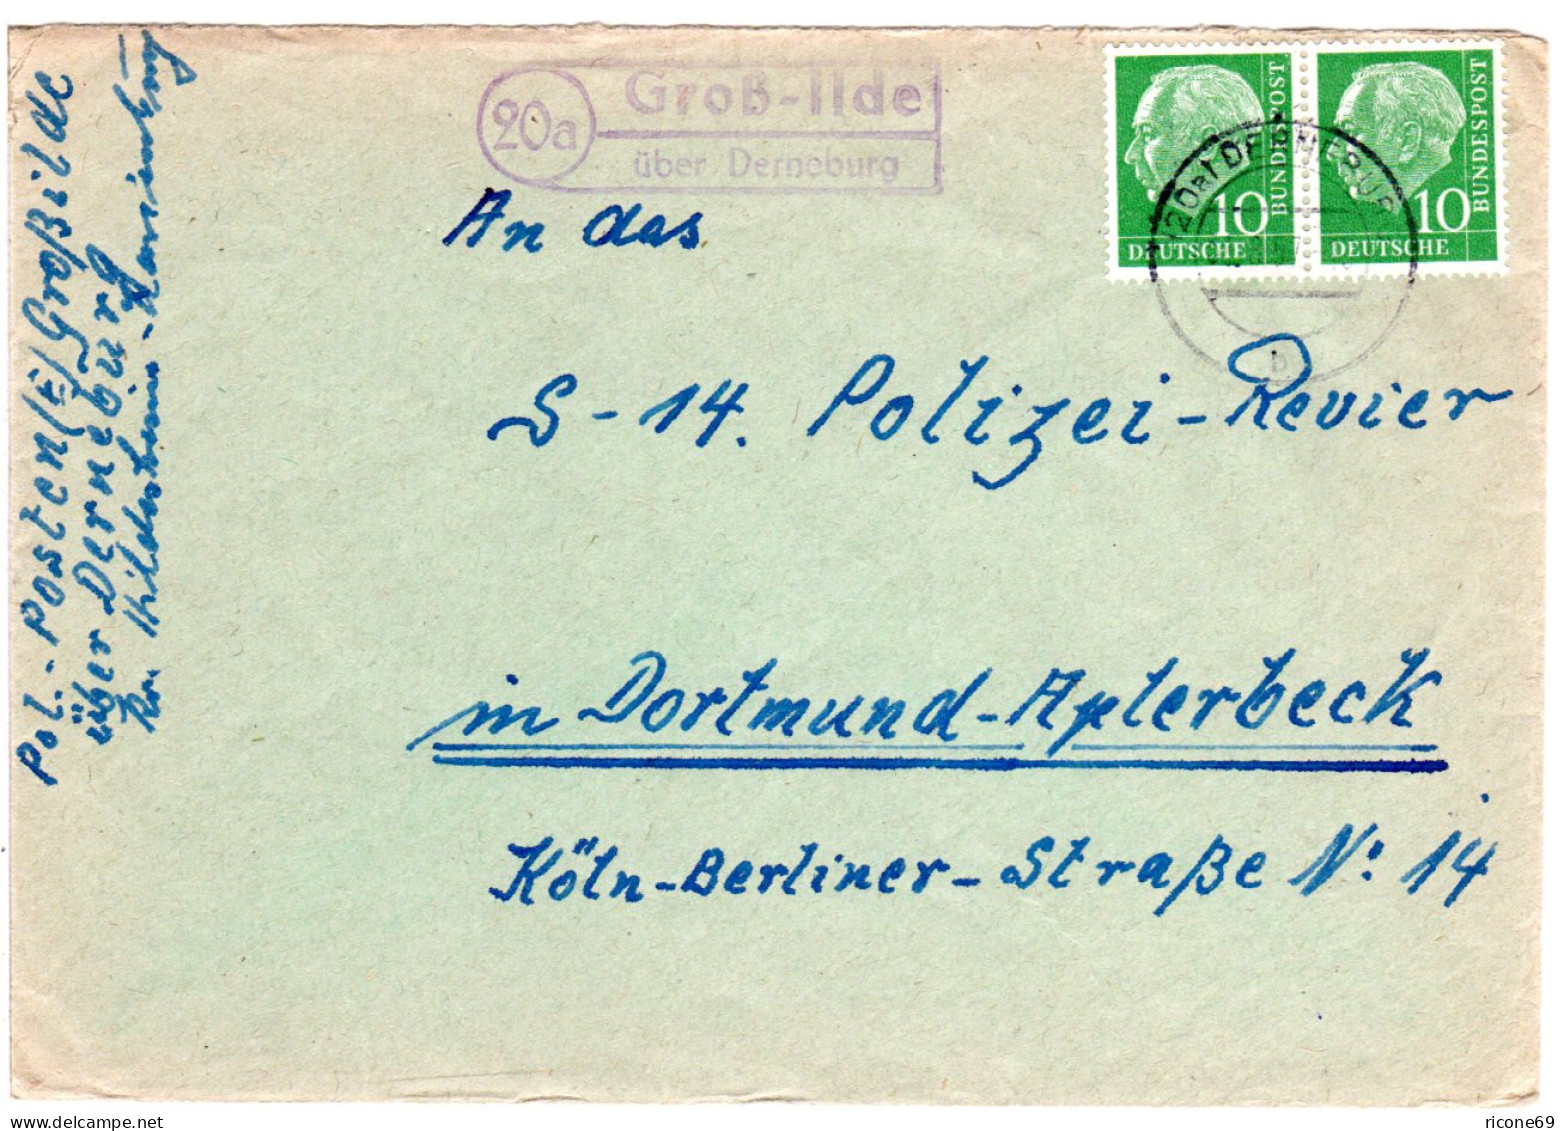 BRD 1957, Landpost Stpl. 20a GROSS-ILDE über Derneburg Auf Brief M. 2x10 Pf. - Cartas & Documentos